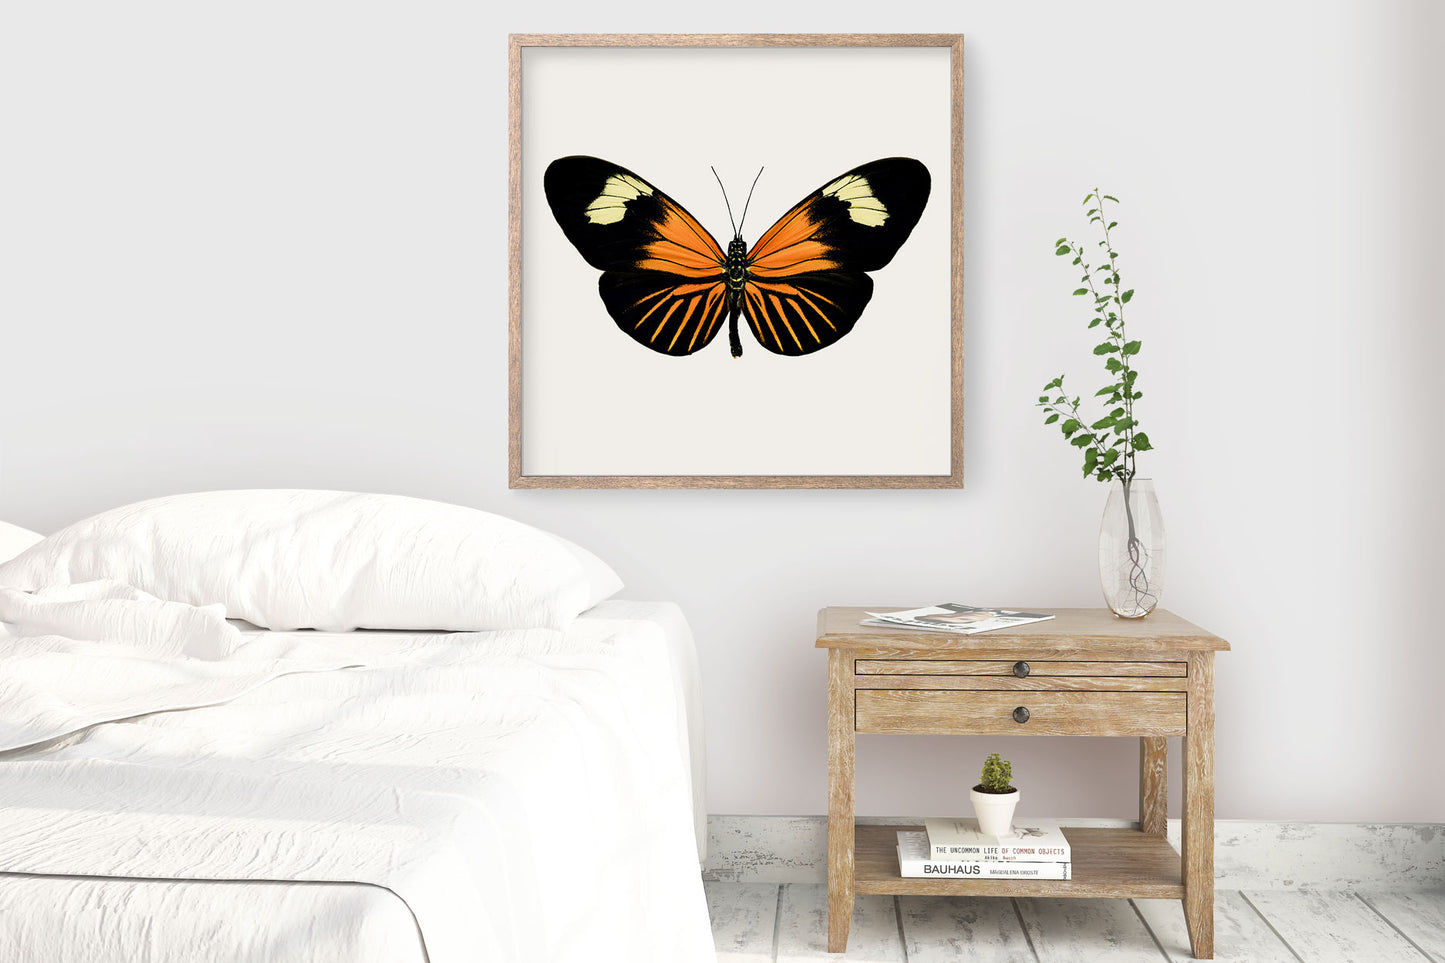 SQ Butterfly No. 13 - Orange Longwing Butterfly